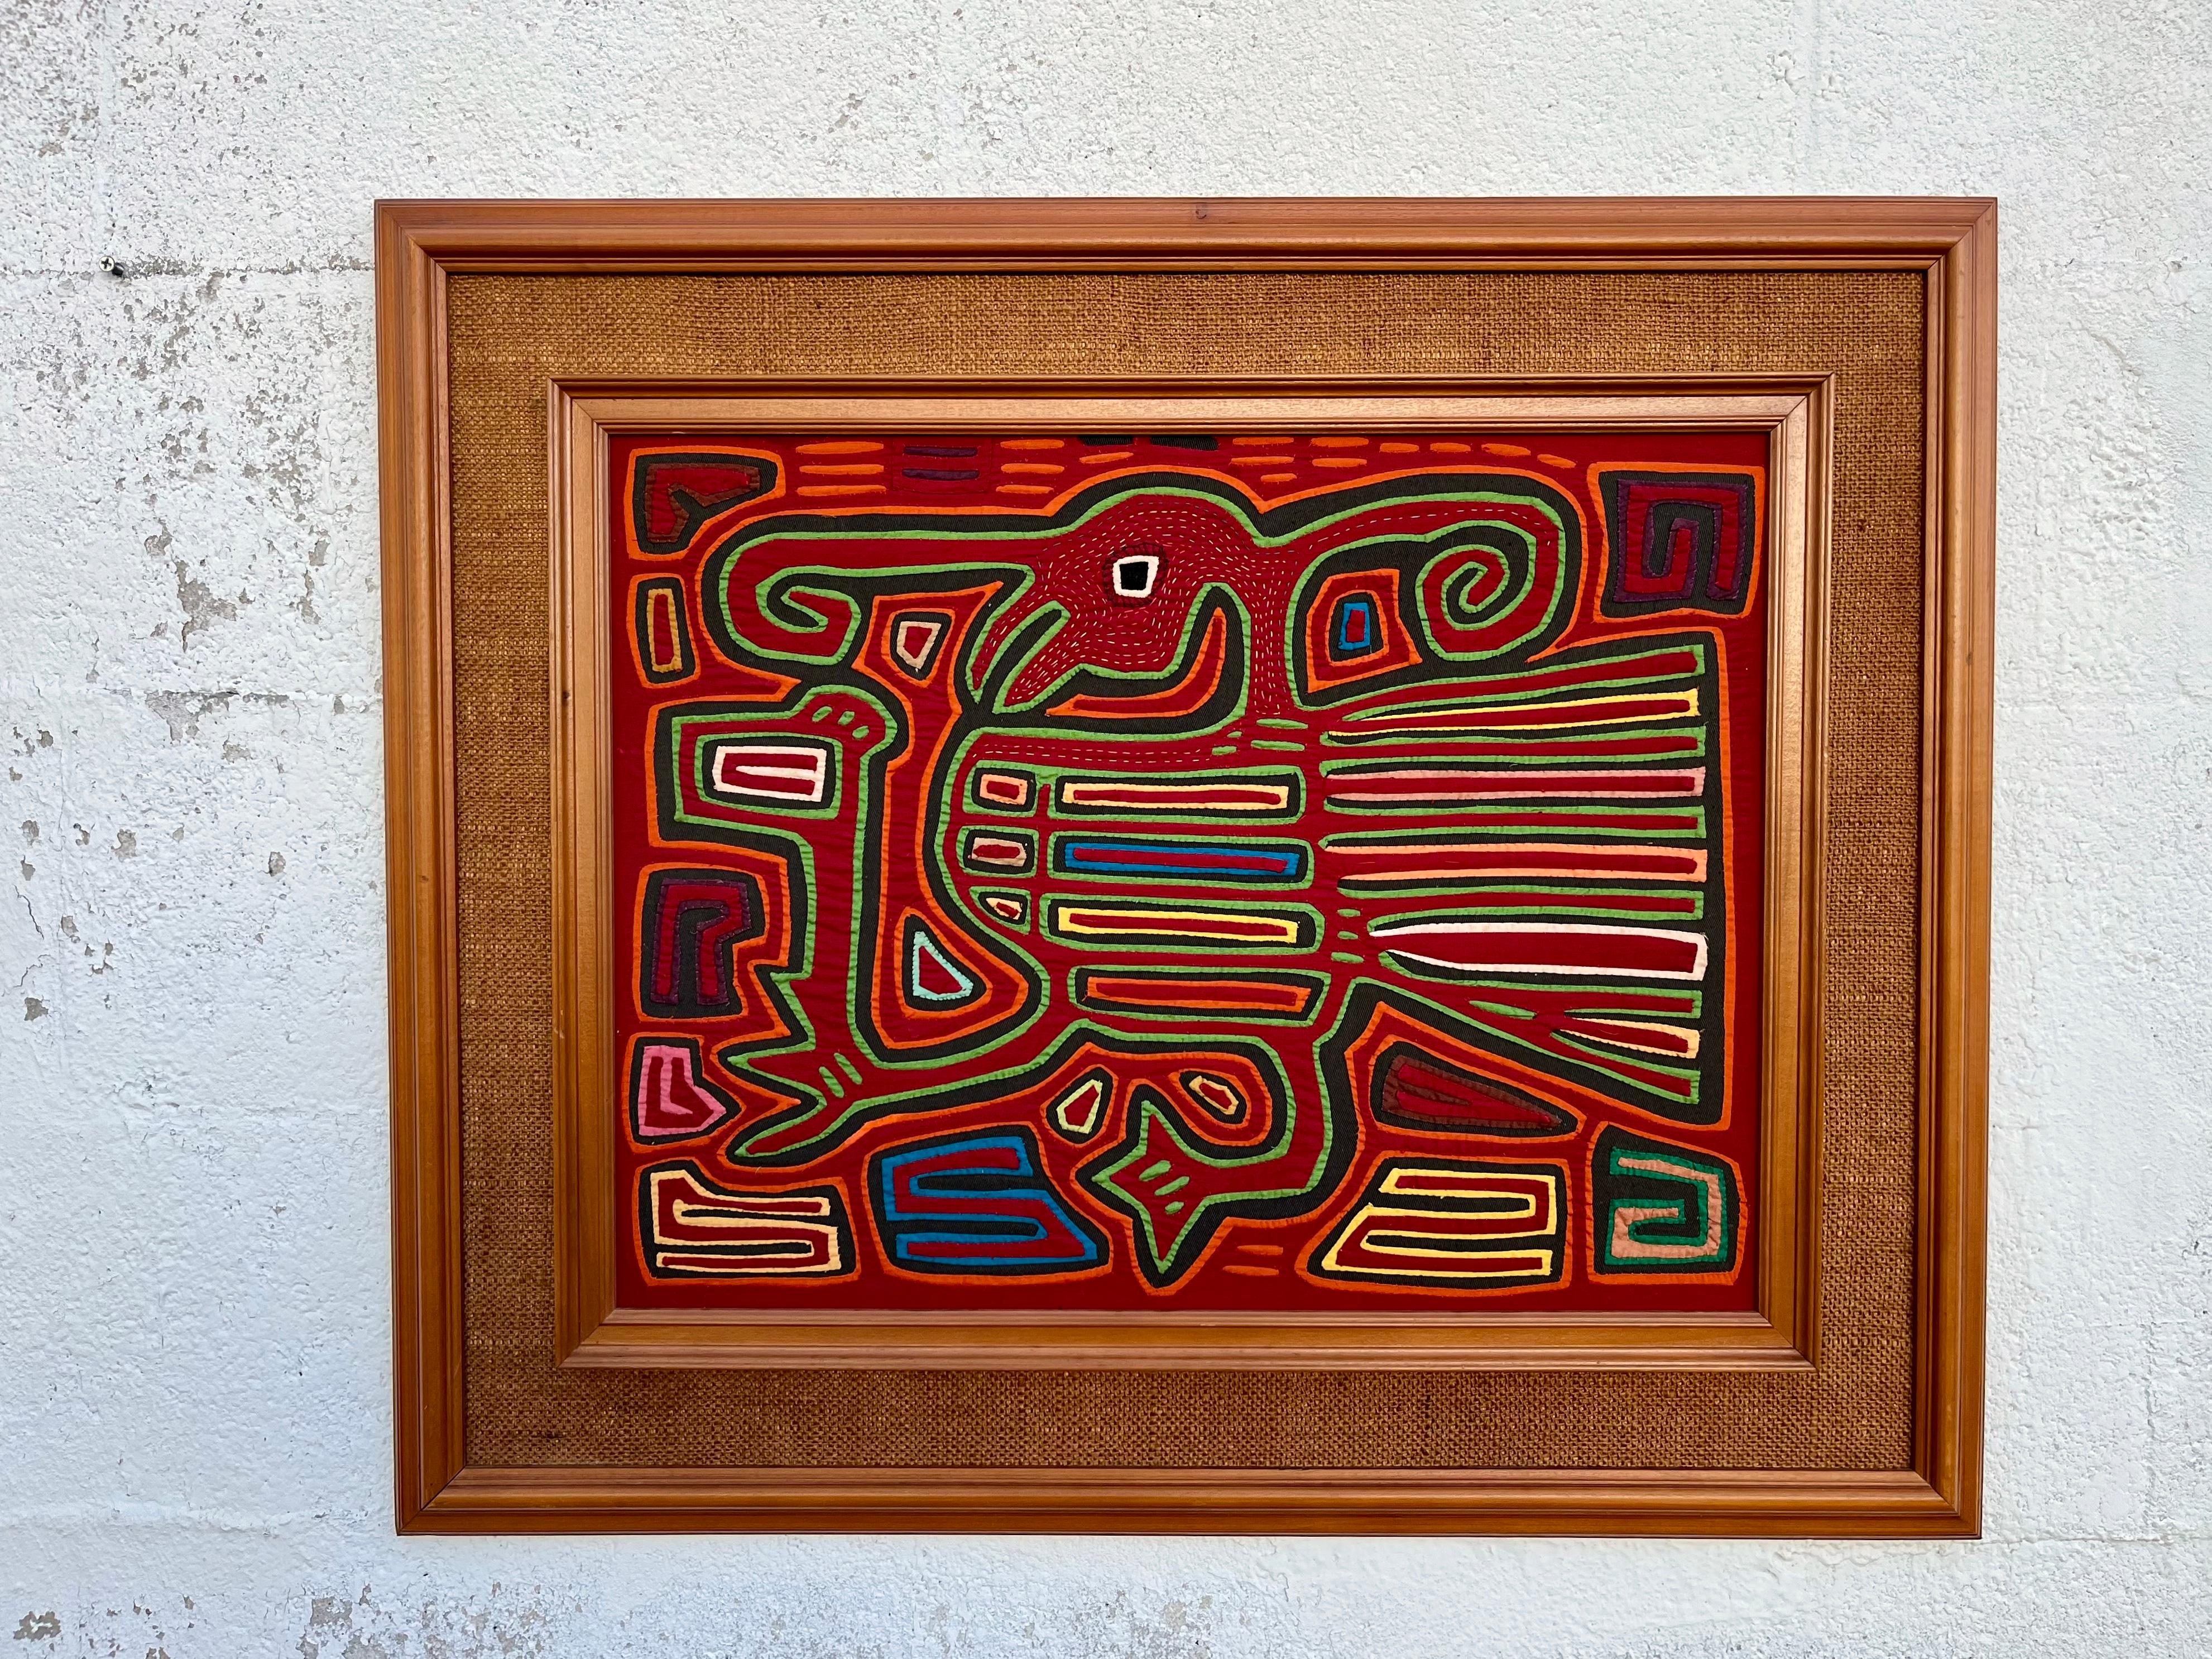 Grand Vintage Tribal Mola Encadré Art Textile Artisanal. Circa 1960s
Le Mola est un artisanat textile traditionnel composé de couches de tissus colorés, cousus et découpés à l'aide de techniques d'application pour créer des motifs et des images.